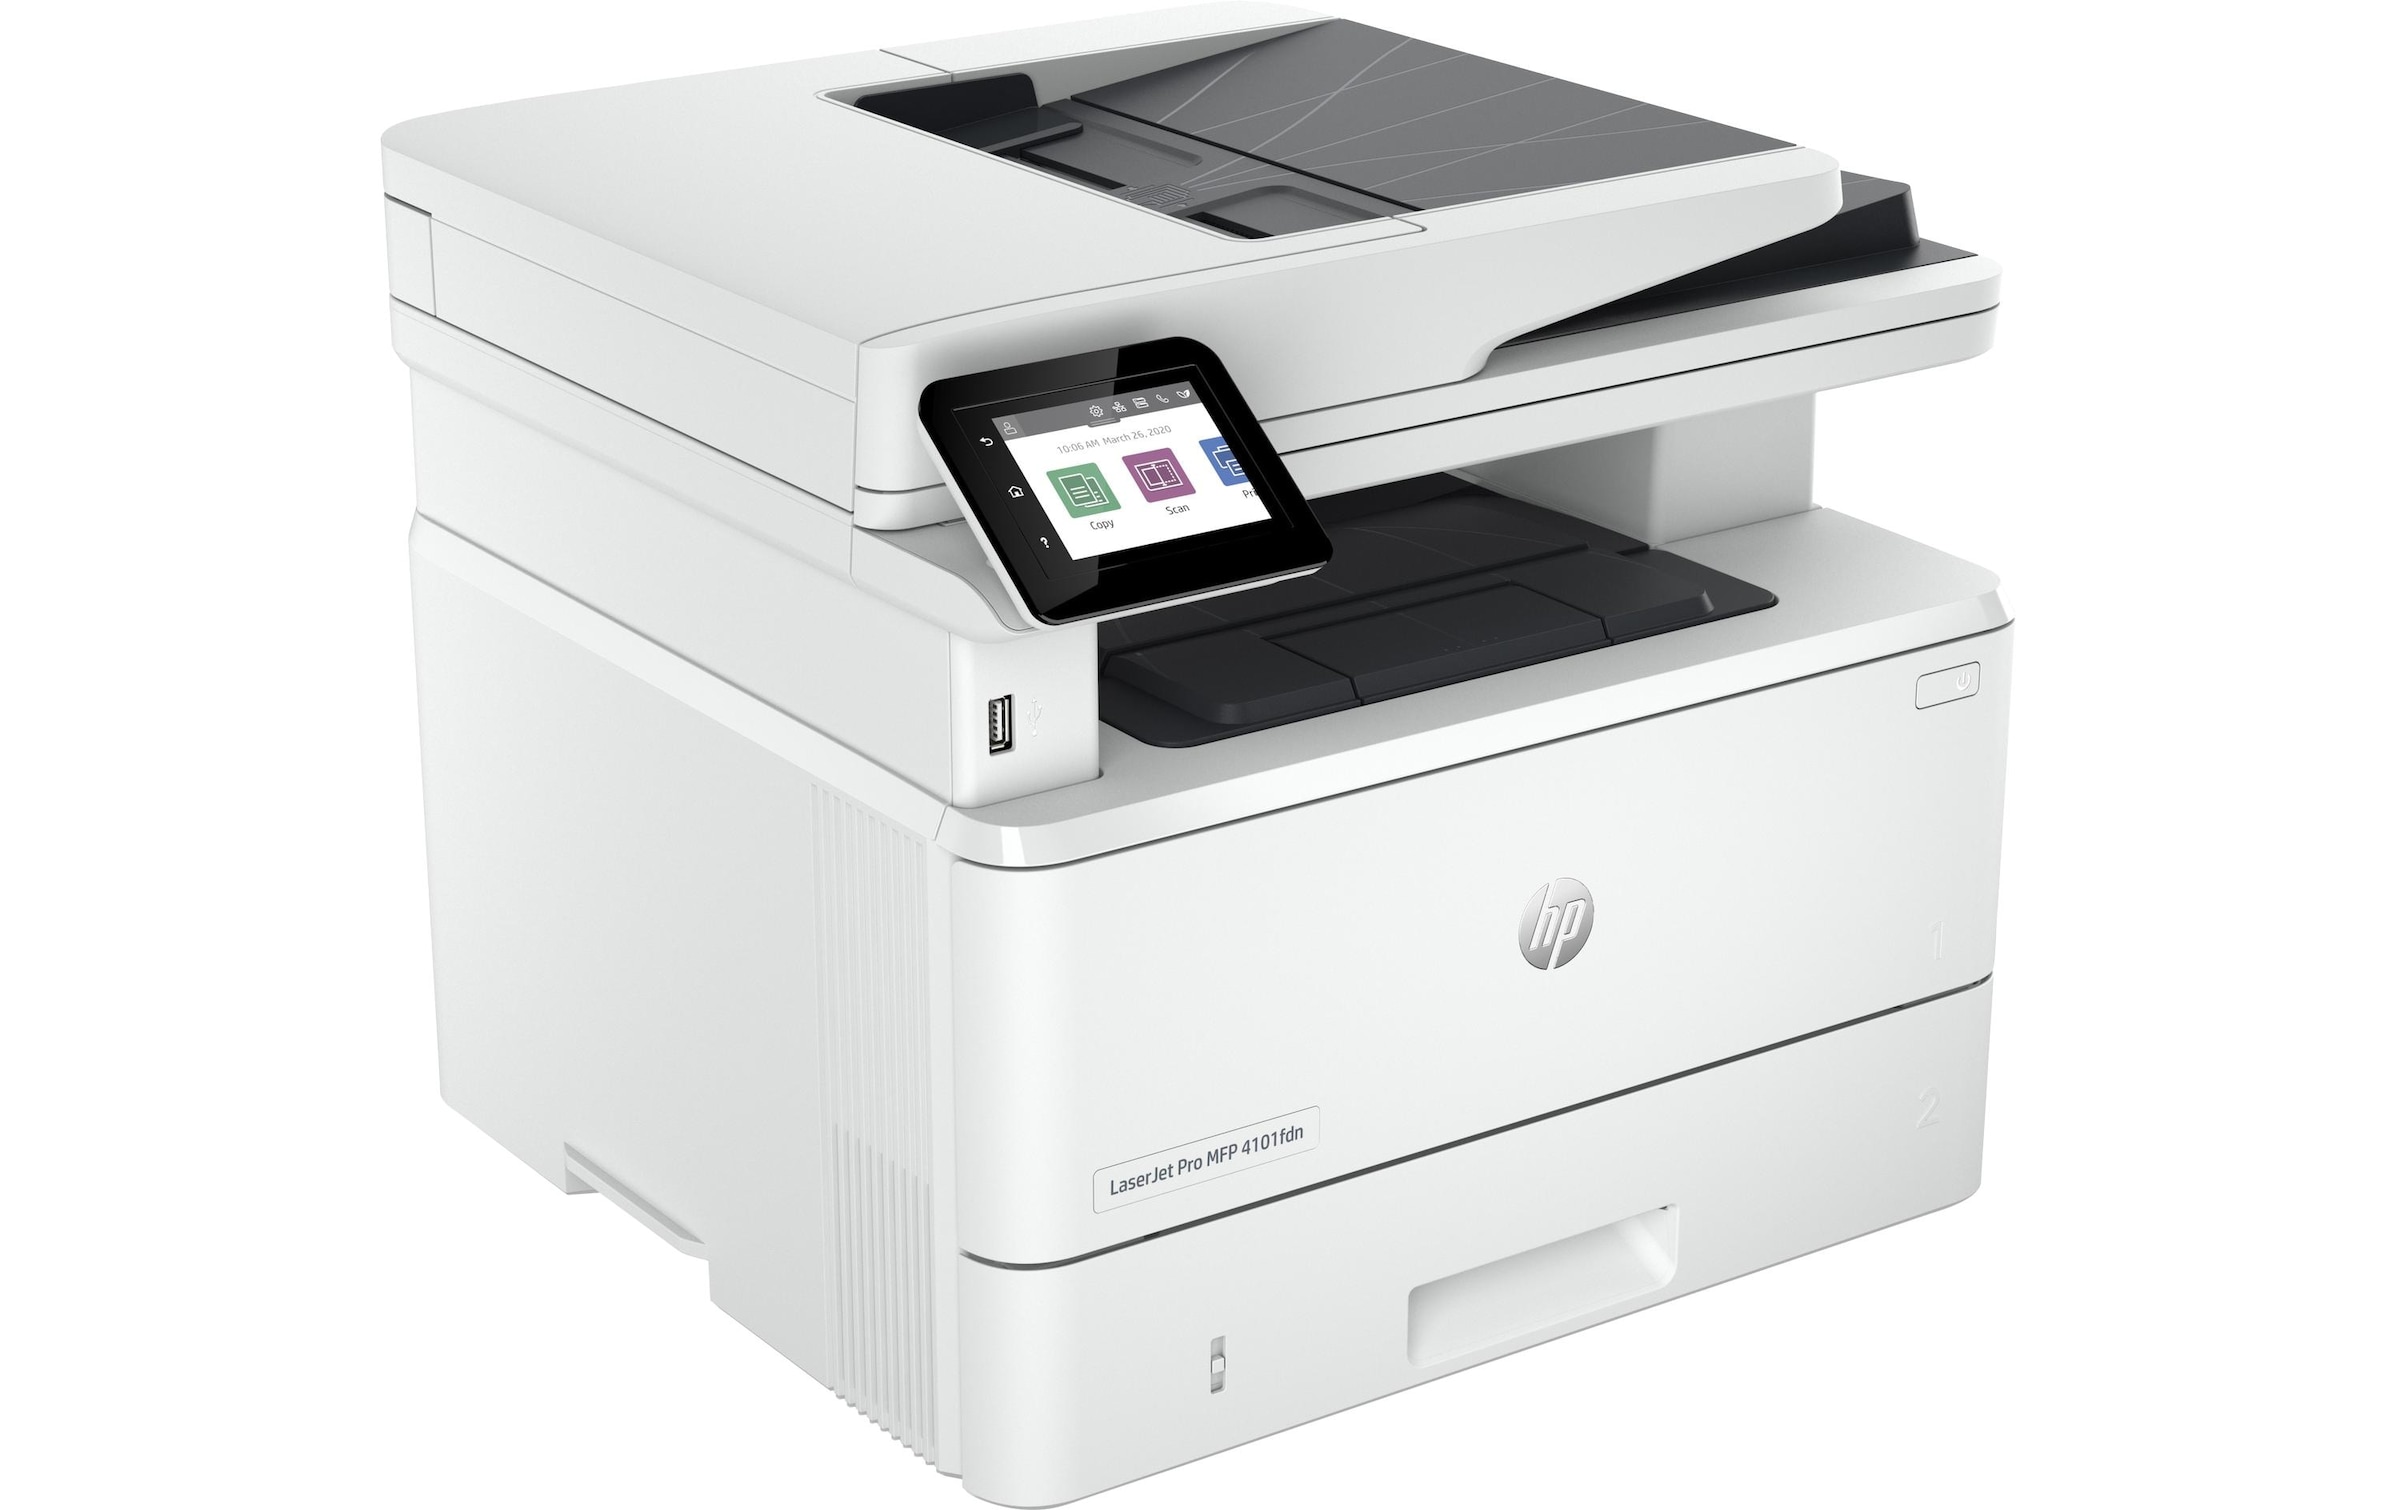 HP Multifunktionsdrucker »LaserJet Pro MFP 4102fdn«